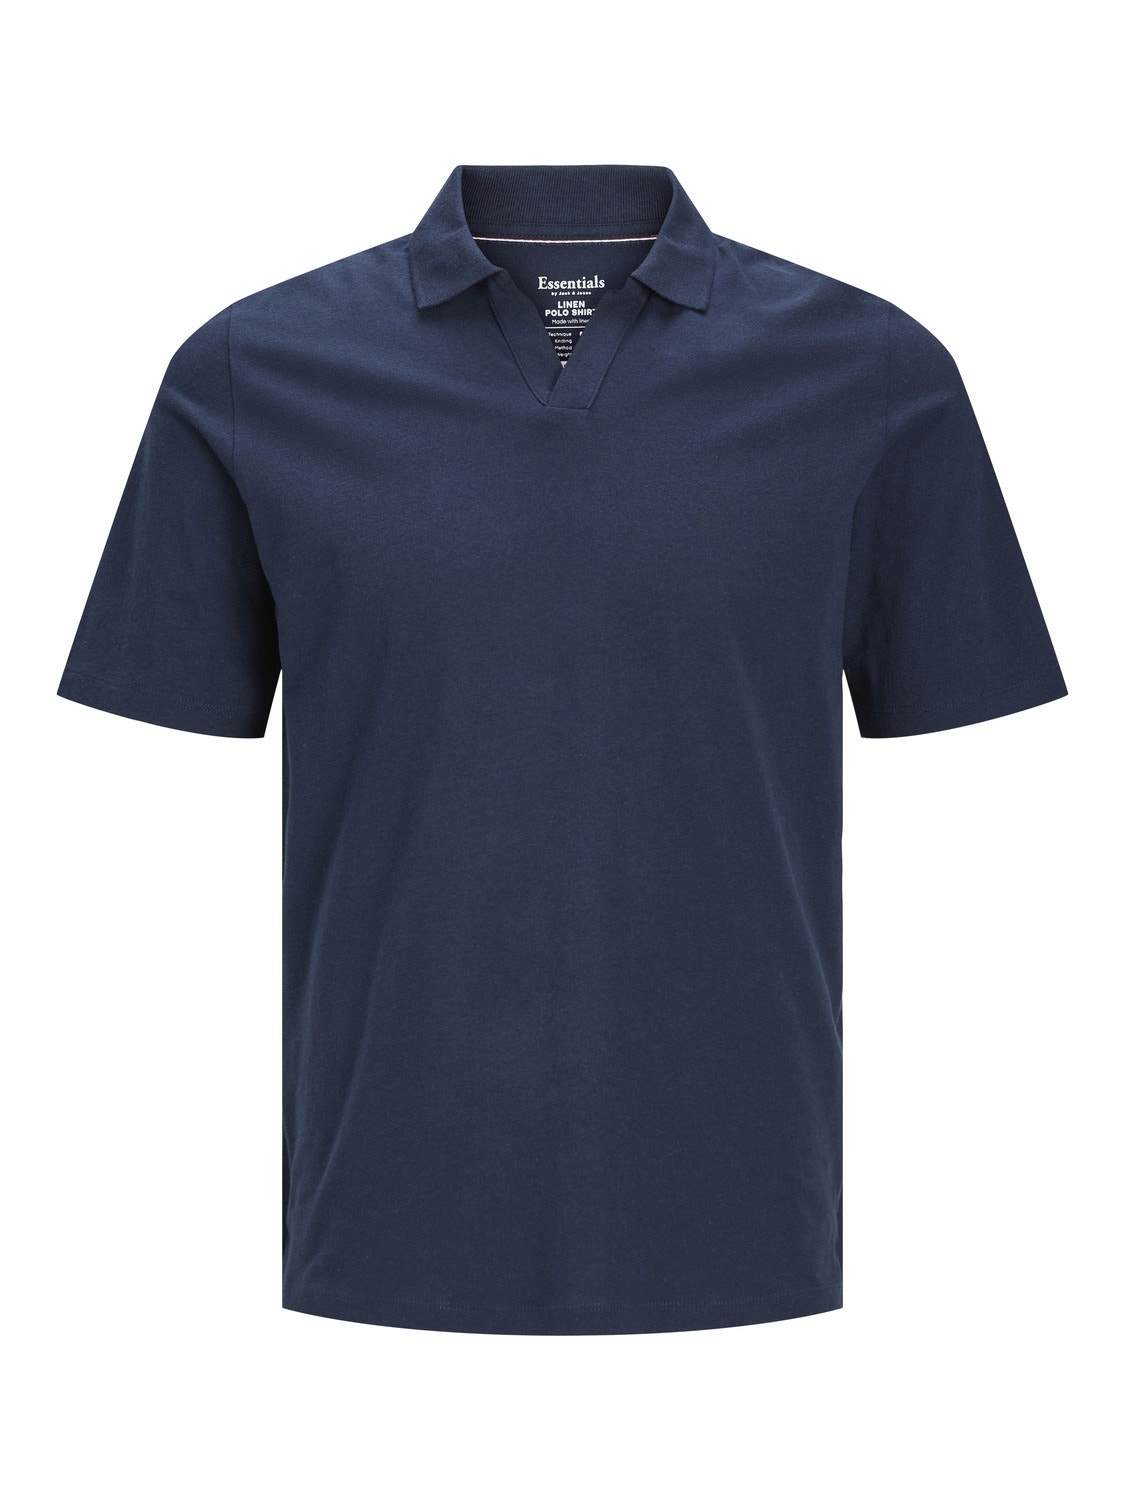 Jack & Jones Enfärgat Polo T-shirt -Navy Blazer - 12246712